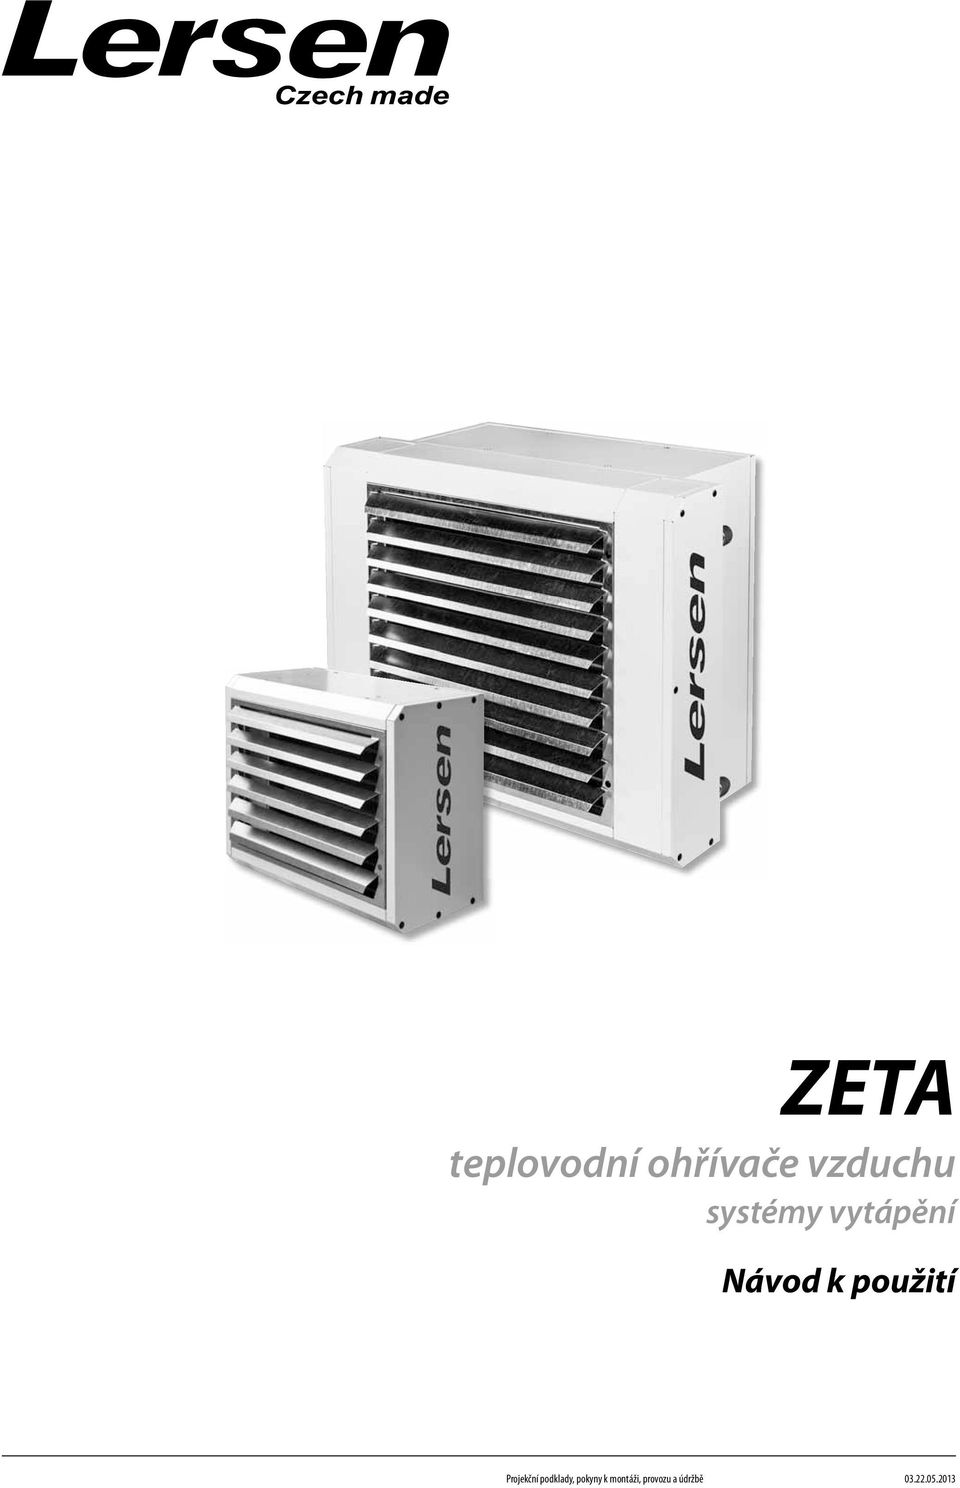 ZETA teplovodní ohřívače vzduchu systémy vytápění. Návod k použití - PDF  Free Download